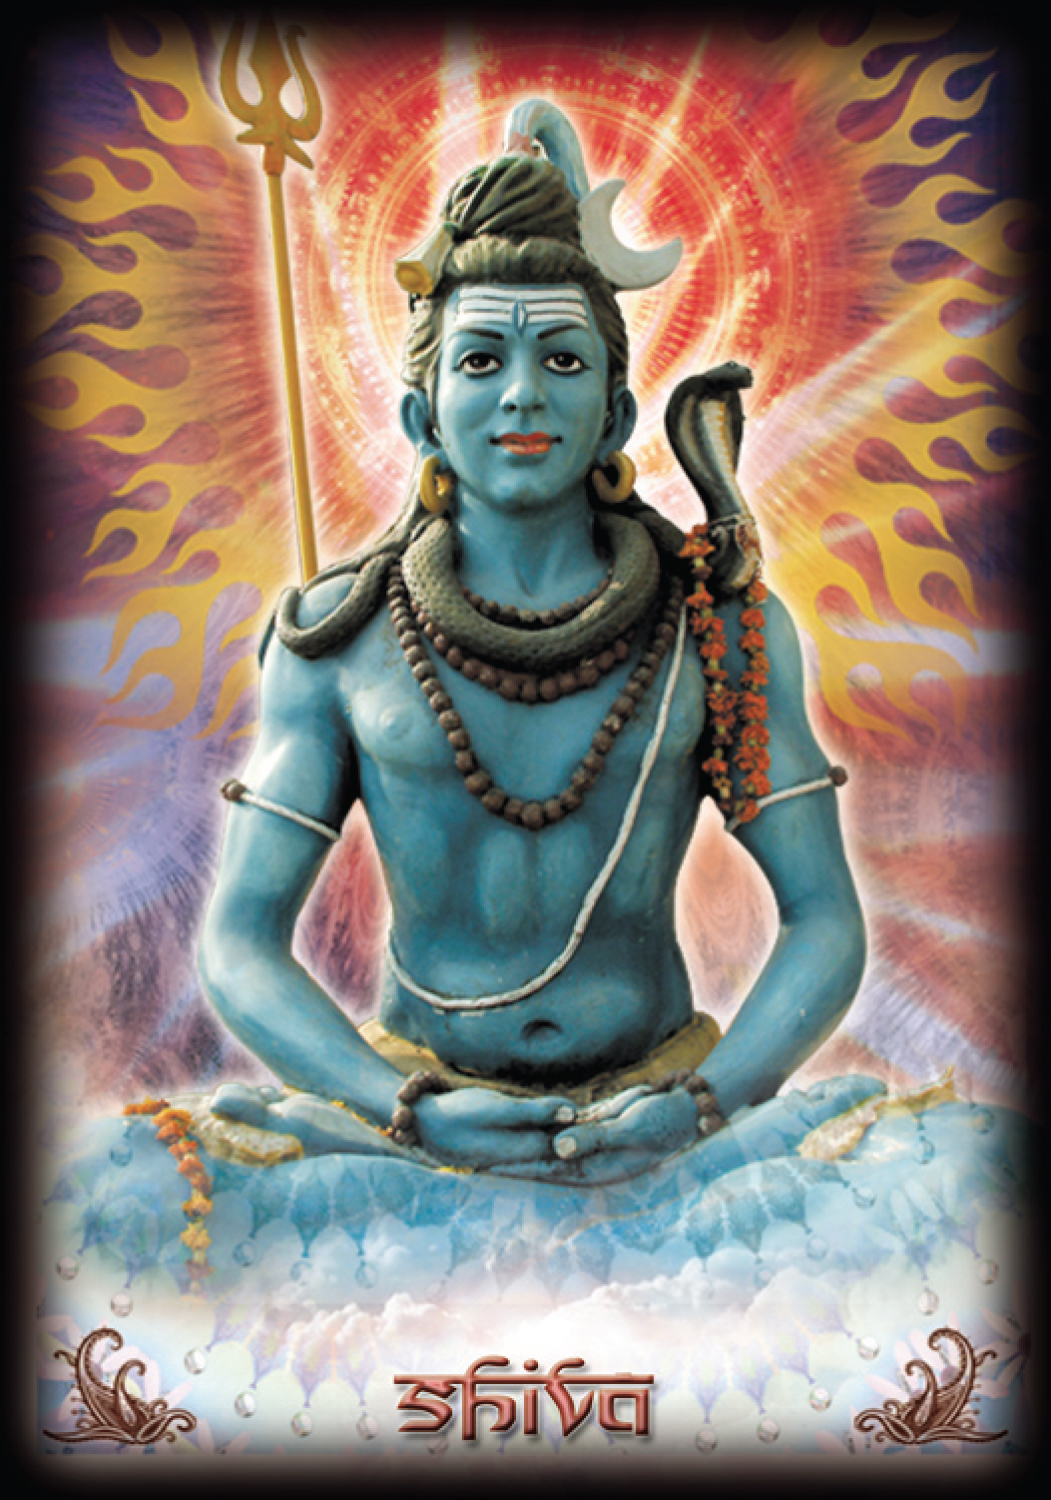 Oracle hindou des dieux de la sagesse : 22 cartes divinatoires et